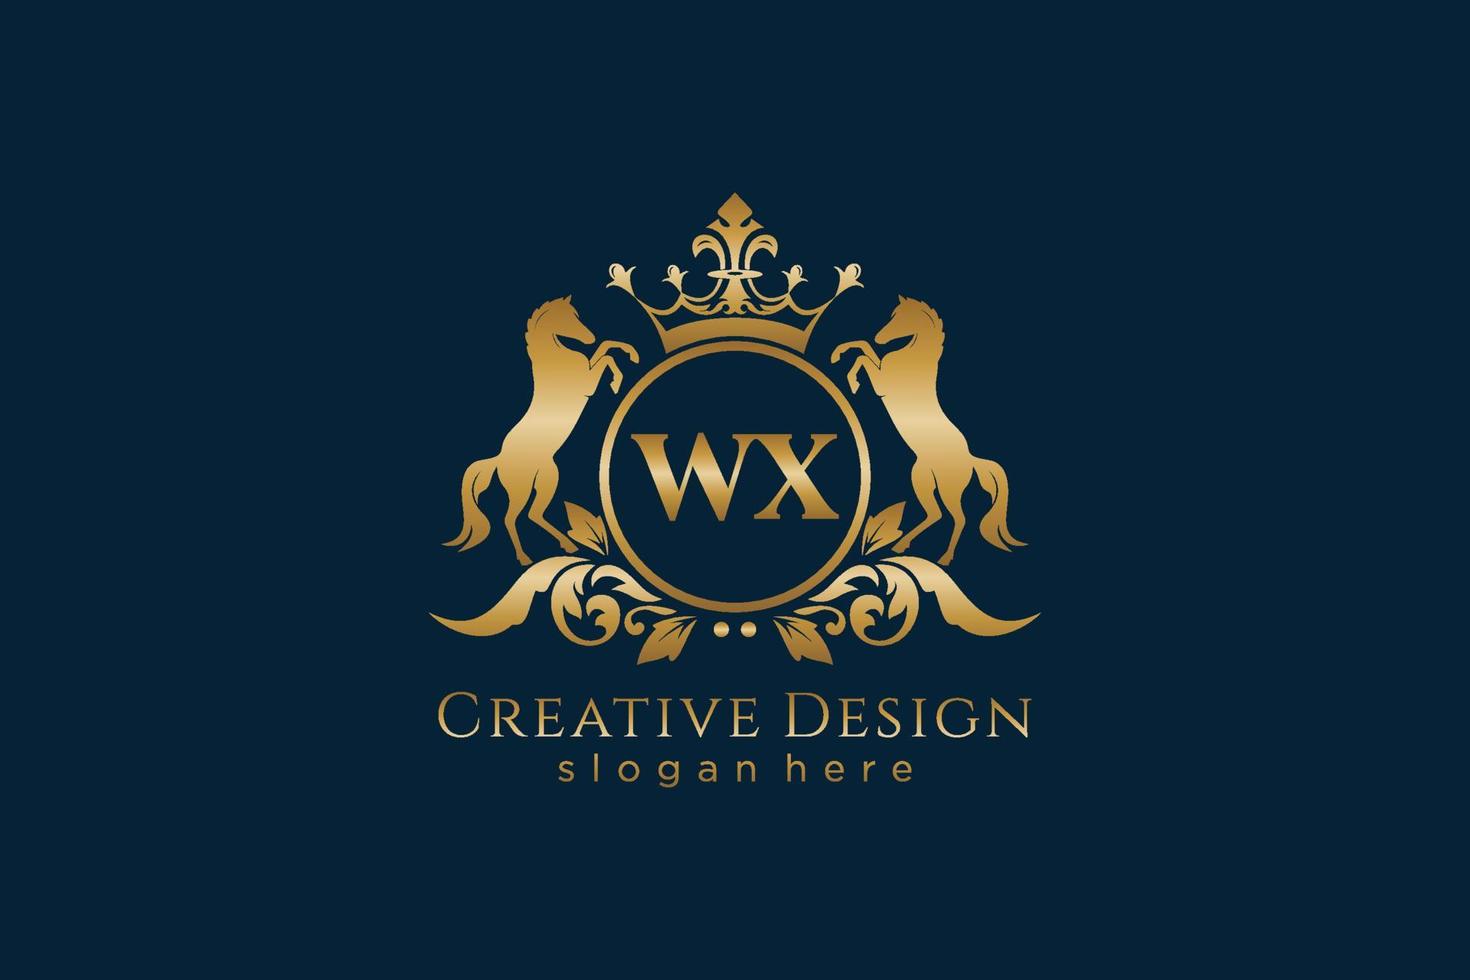 cresta dorada retro wx inicial con círculo y dos caballos, plantilla de insignia con pergaminos y corona real - perfecto para proyectos de marca de lujo vector